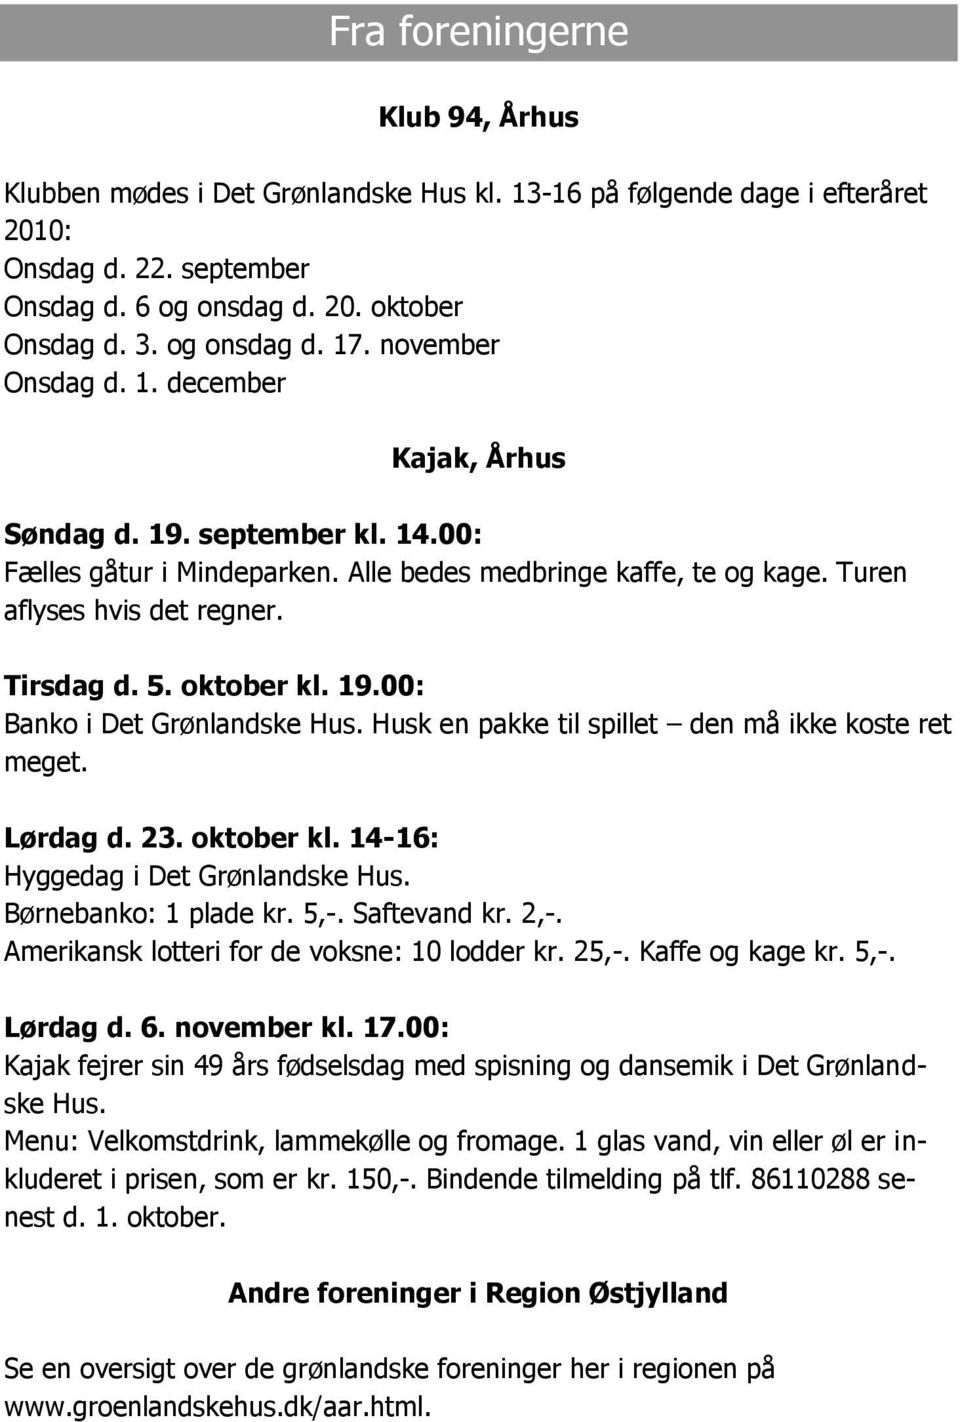 oktober kl. 19.00: Banko i Det Grønlandske Hus. Husk en pakke til spillet den må ikke koste ret meget. Lørdag d. 23. oktober kl. 14-16: Hyggedag i Det Grønlandske Hus. Børnebanko: 1 plade kr. 5,-.